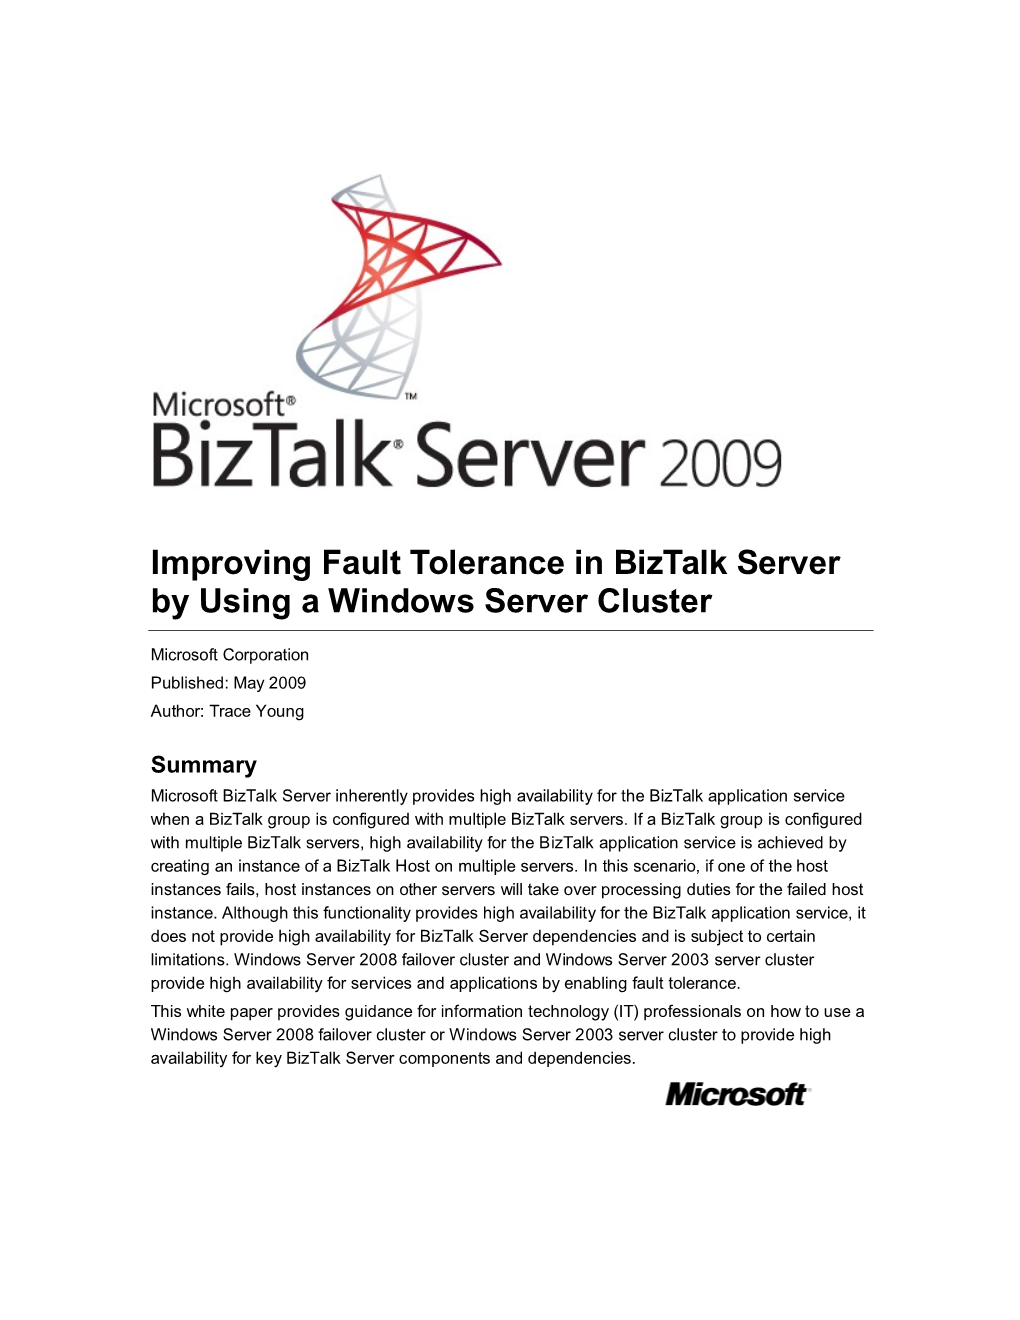 Improving Fault Tolerance in Biztalk Server by Using a Windows Server Cluster